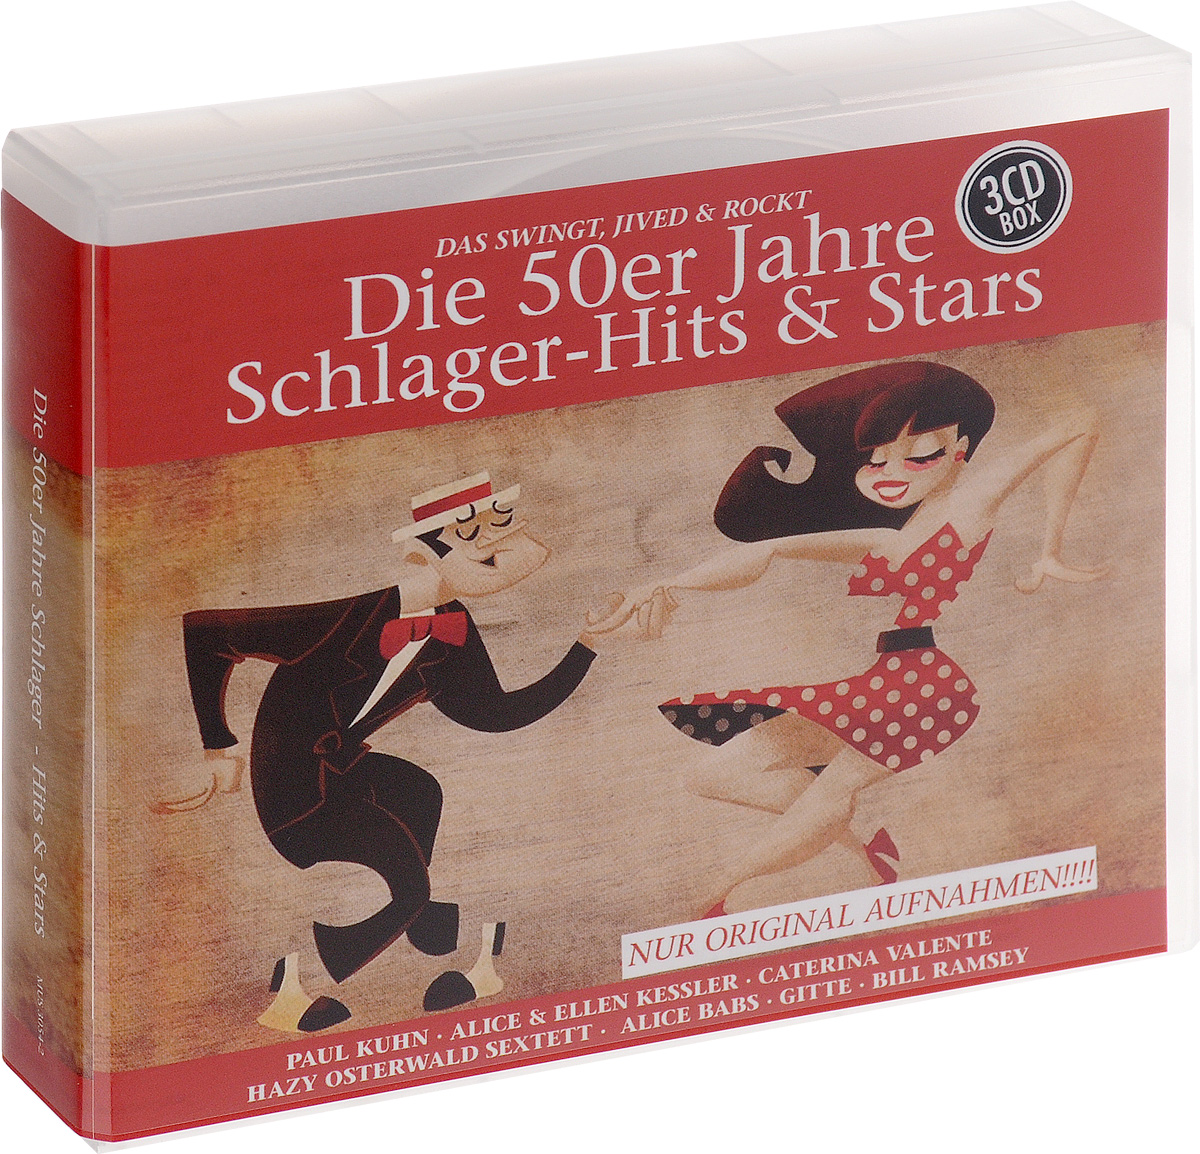 Die 50er Jahre Schlager. Hits & Stars (3 CD)